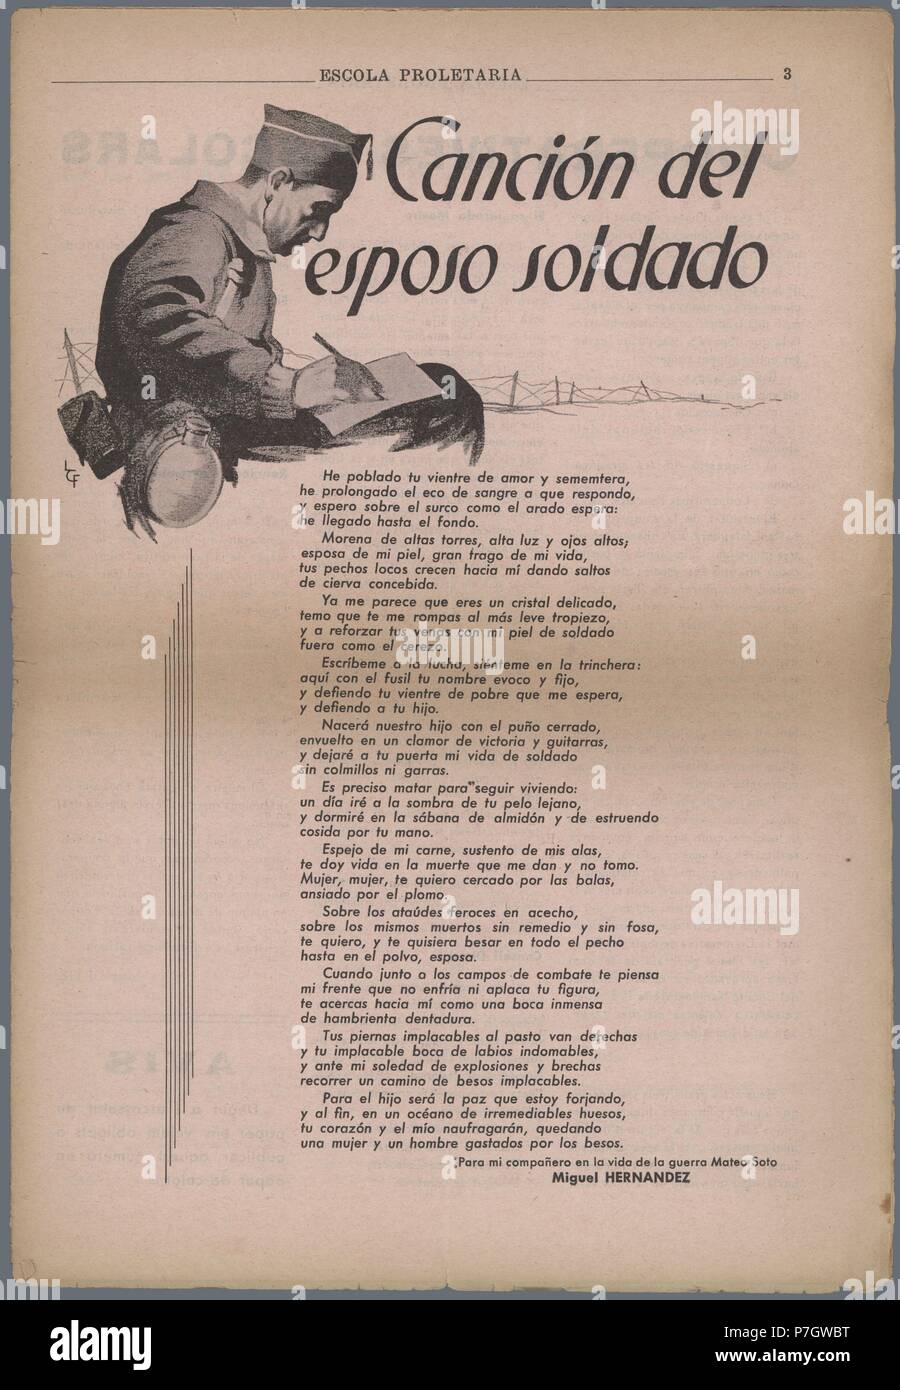 Canción del esposo soldado, poema de Miguel Hernández, publicado en la  revista Escola Proletaria, órgano de la Federación Catalana de trabajadores  de la enseñanza, del sindicato UGT. Barcelona, septiembre de 1937 Fotografía